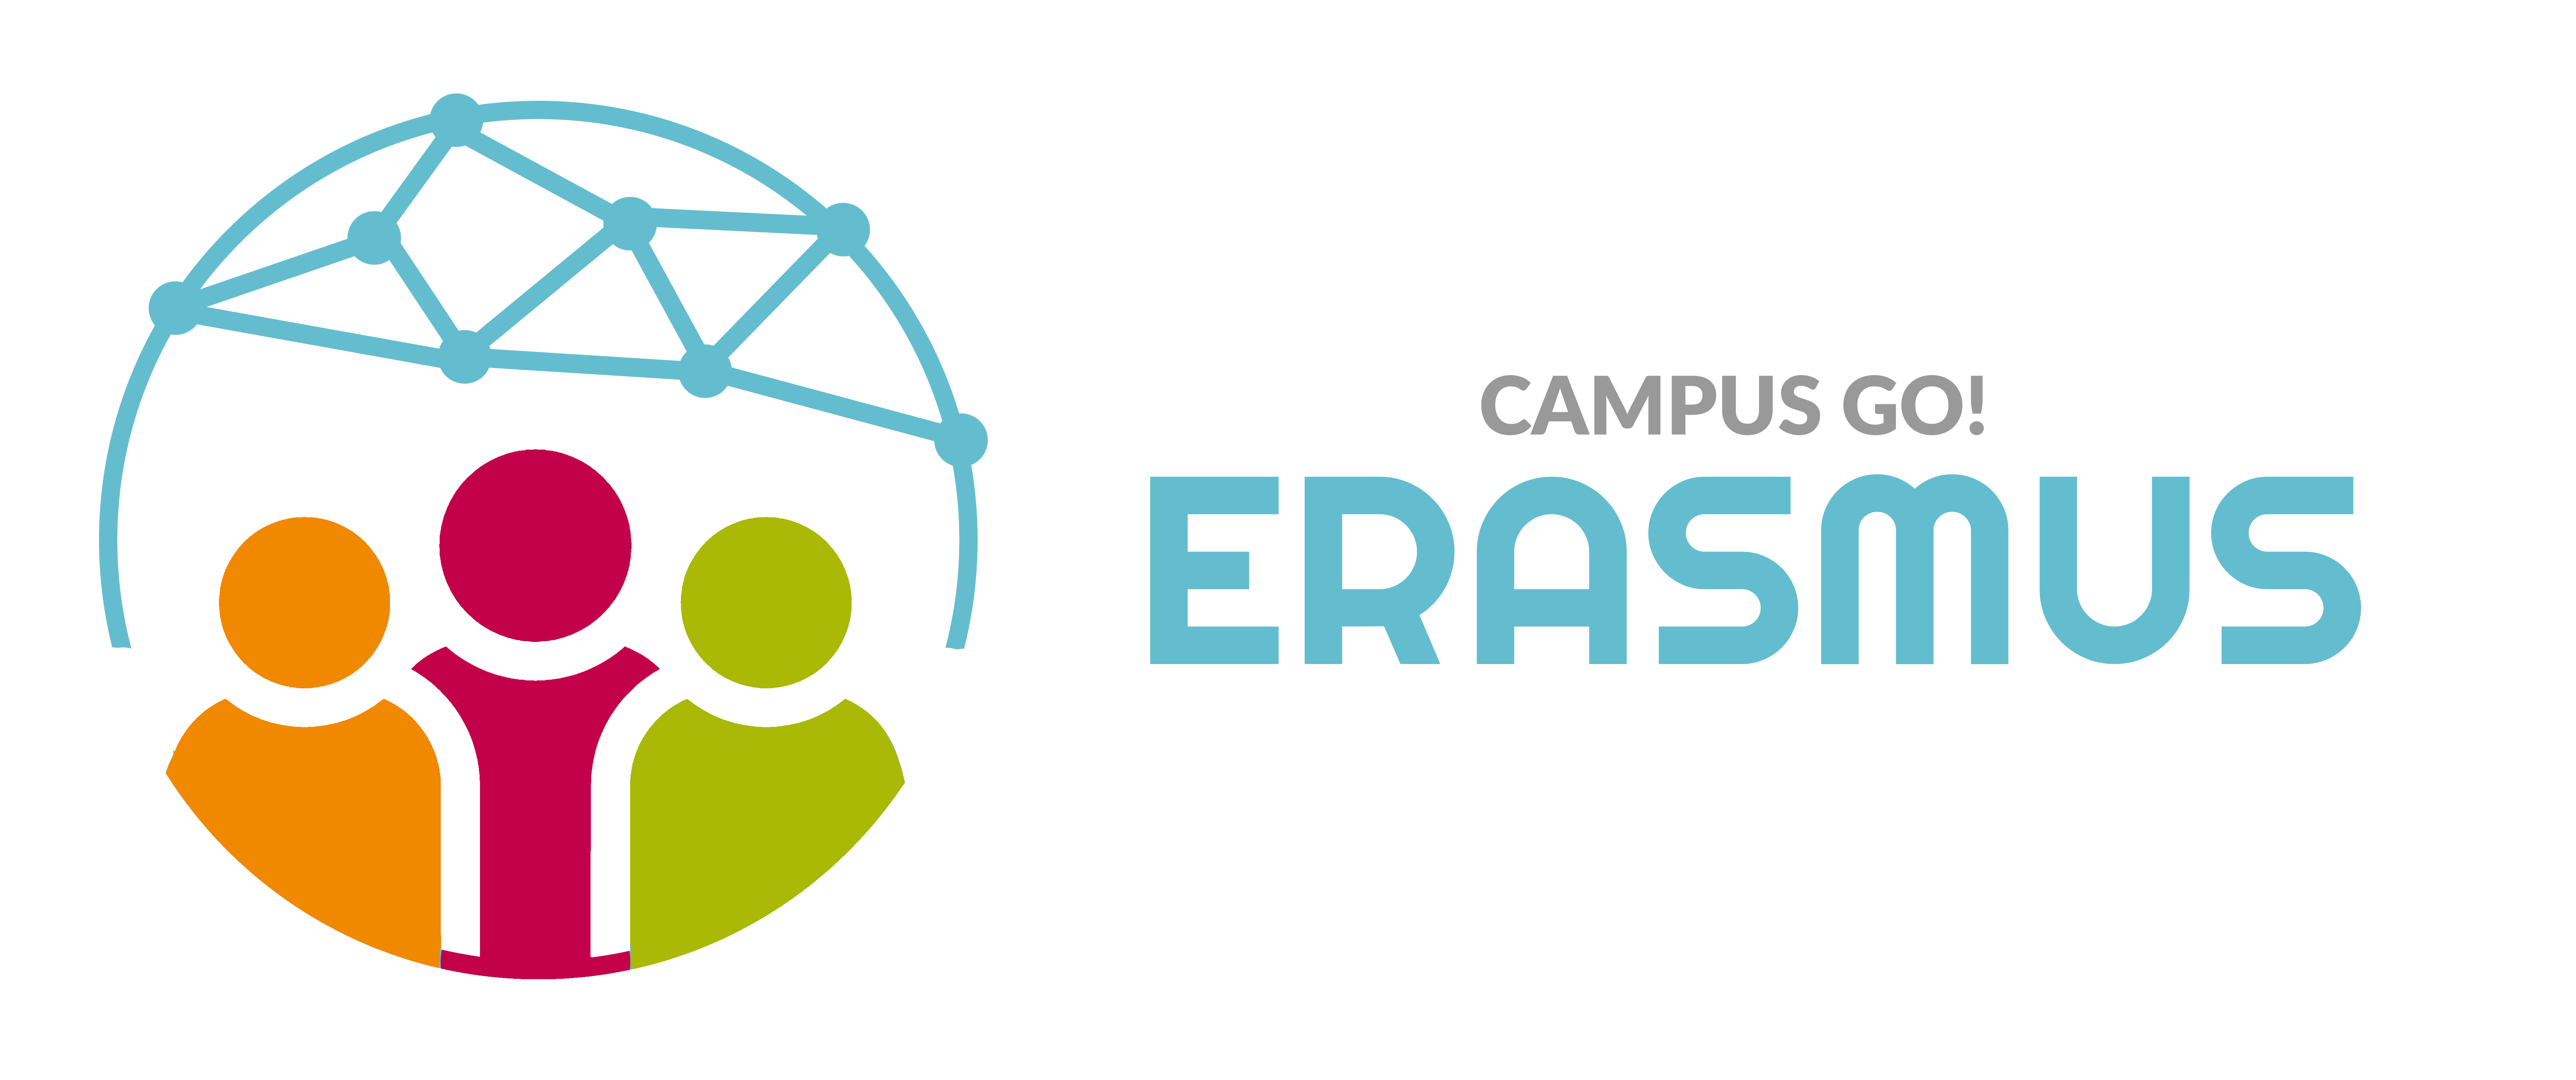 Campus Go! Erasmus